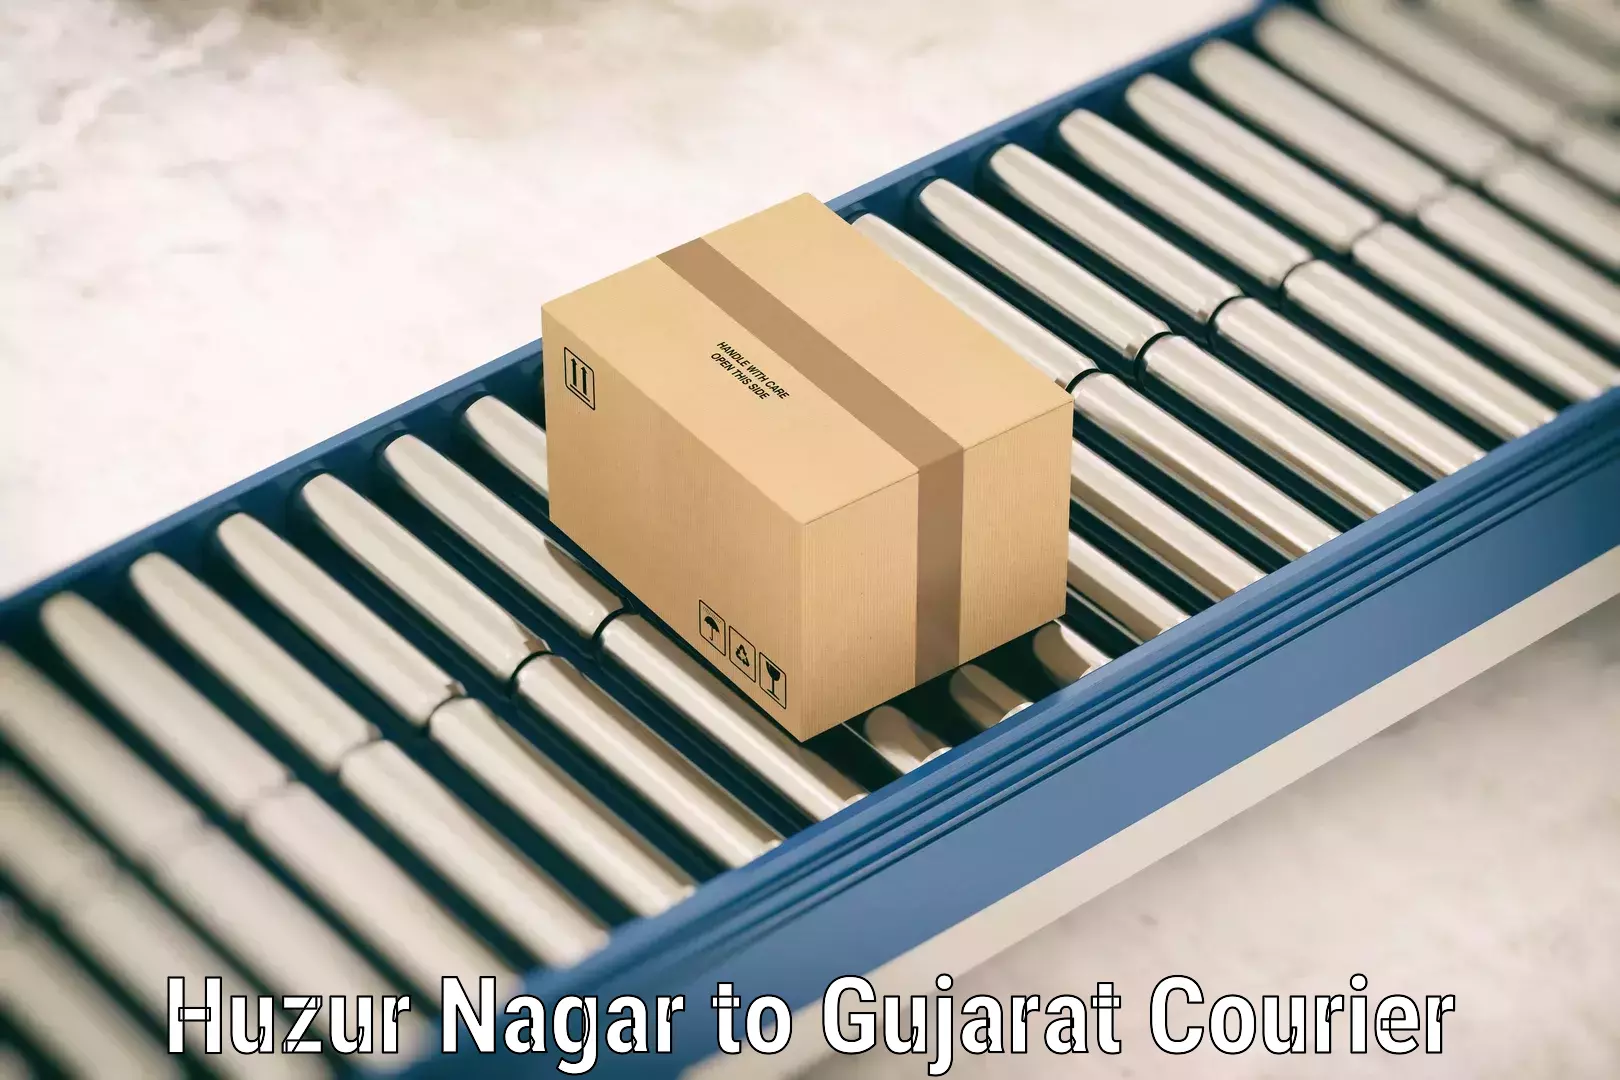 Baggage delivery management Huzur Nagar to Gujarat